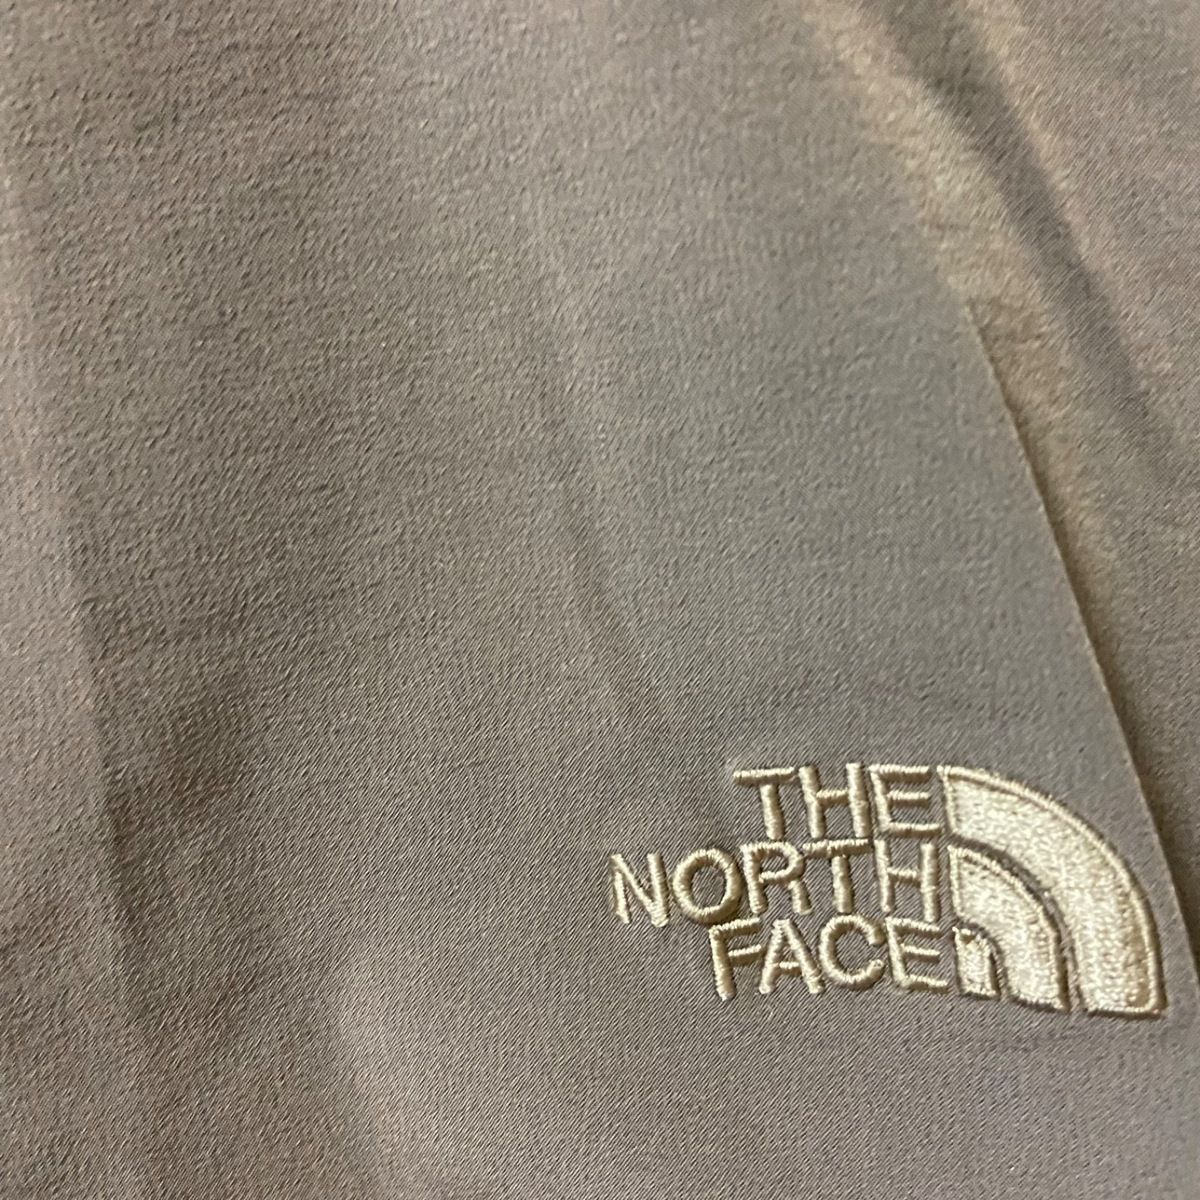 THE NORTH FACE(ノースフェイス) パンツ サイズM レディース 